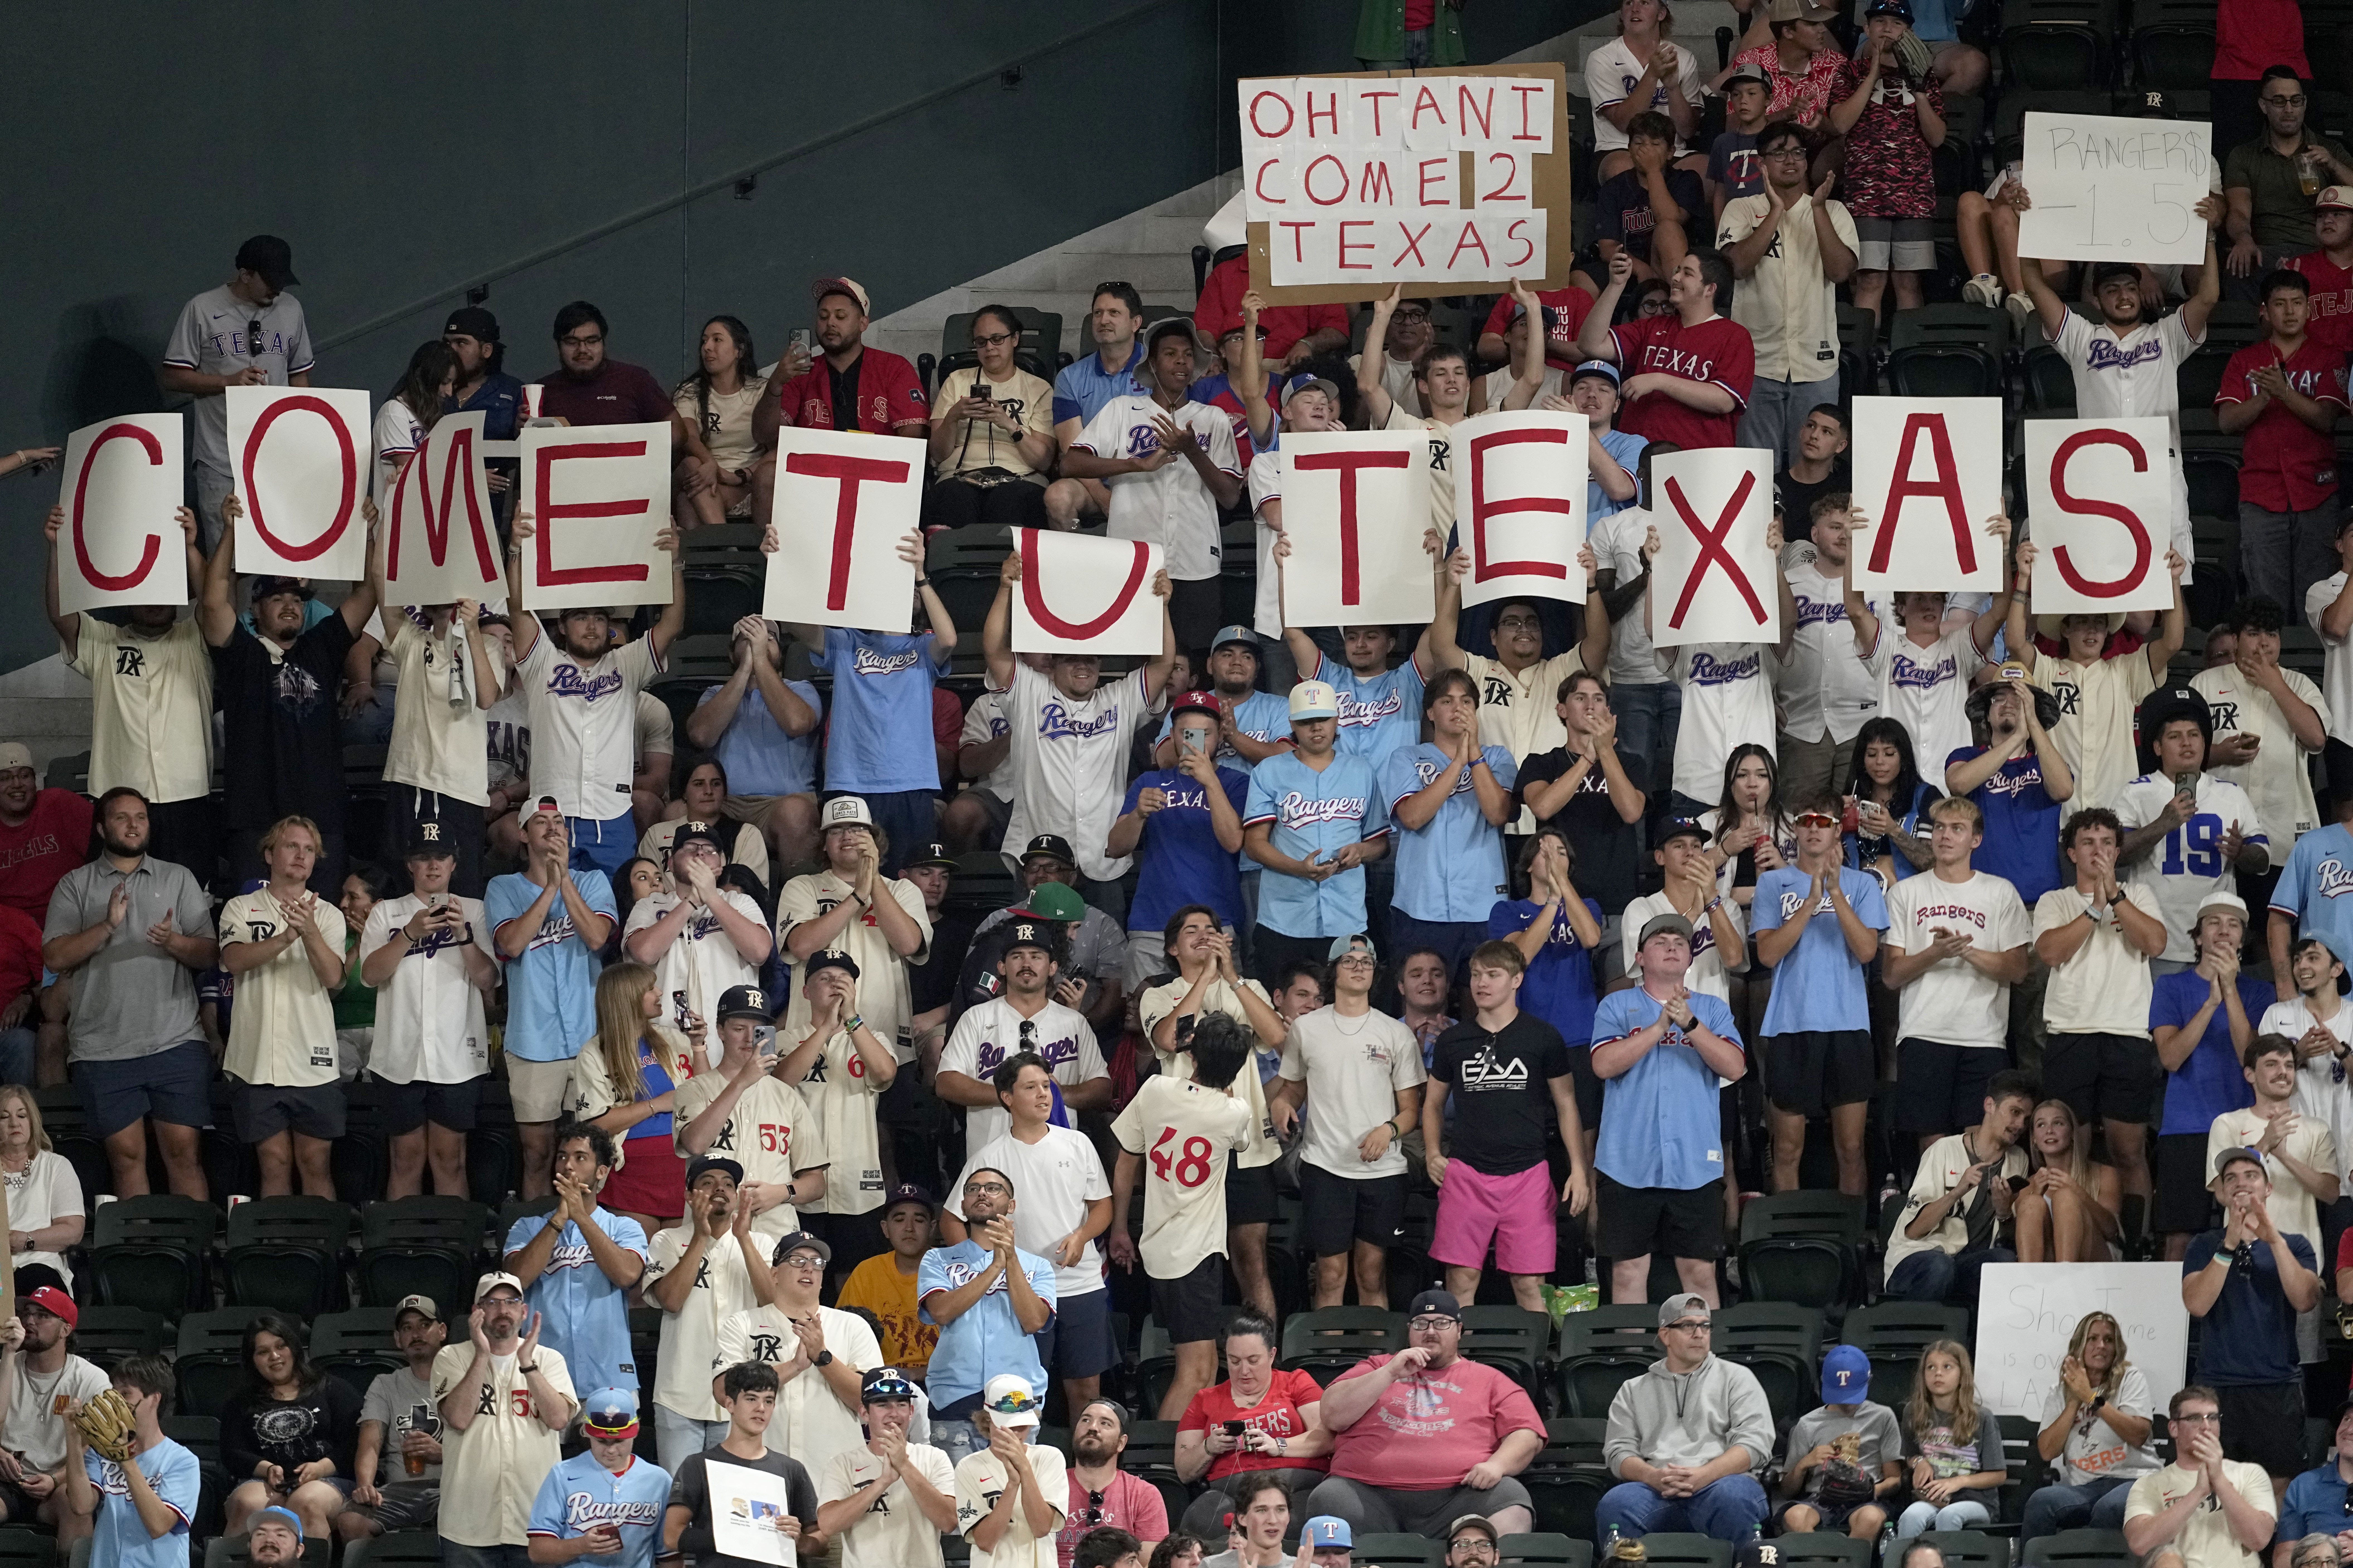 Texas Rangers' Globe Life Field Has 22 AV Closets—but No Fans to